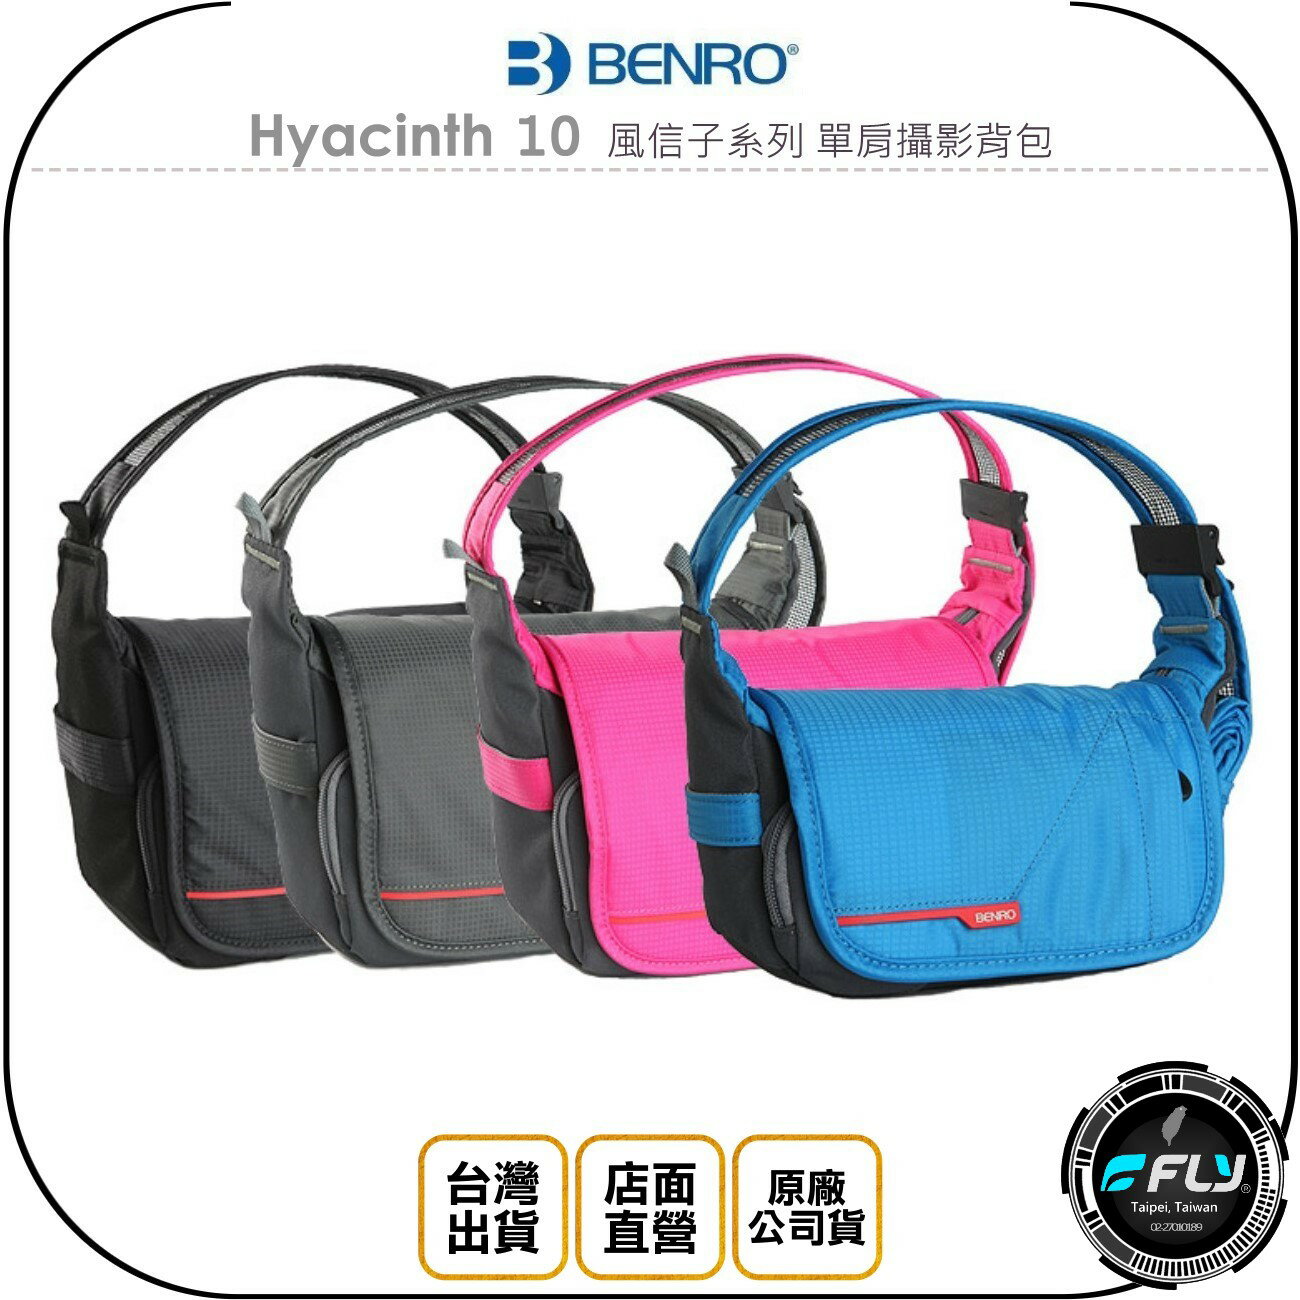 《飛翔無線3C》BENRO 百諾 Hyacinth 10 風信子系列 單肩攝影背包◉公司貨◉側背相機包◉斜背旅遊包